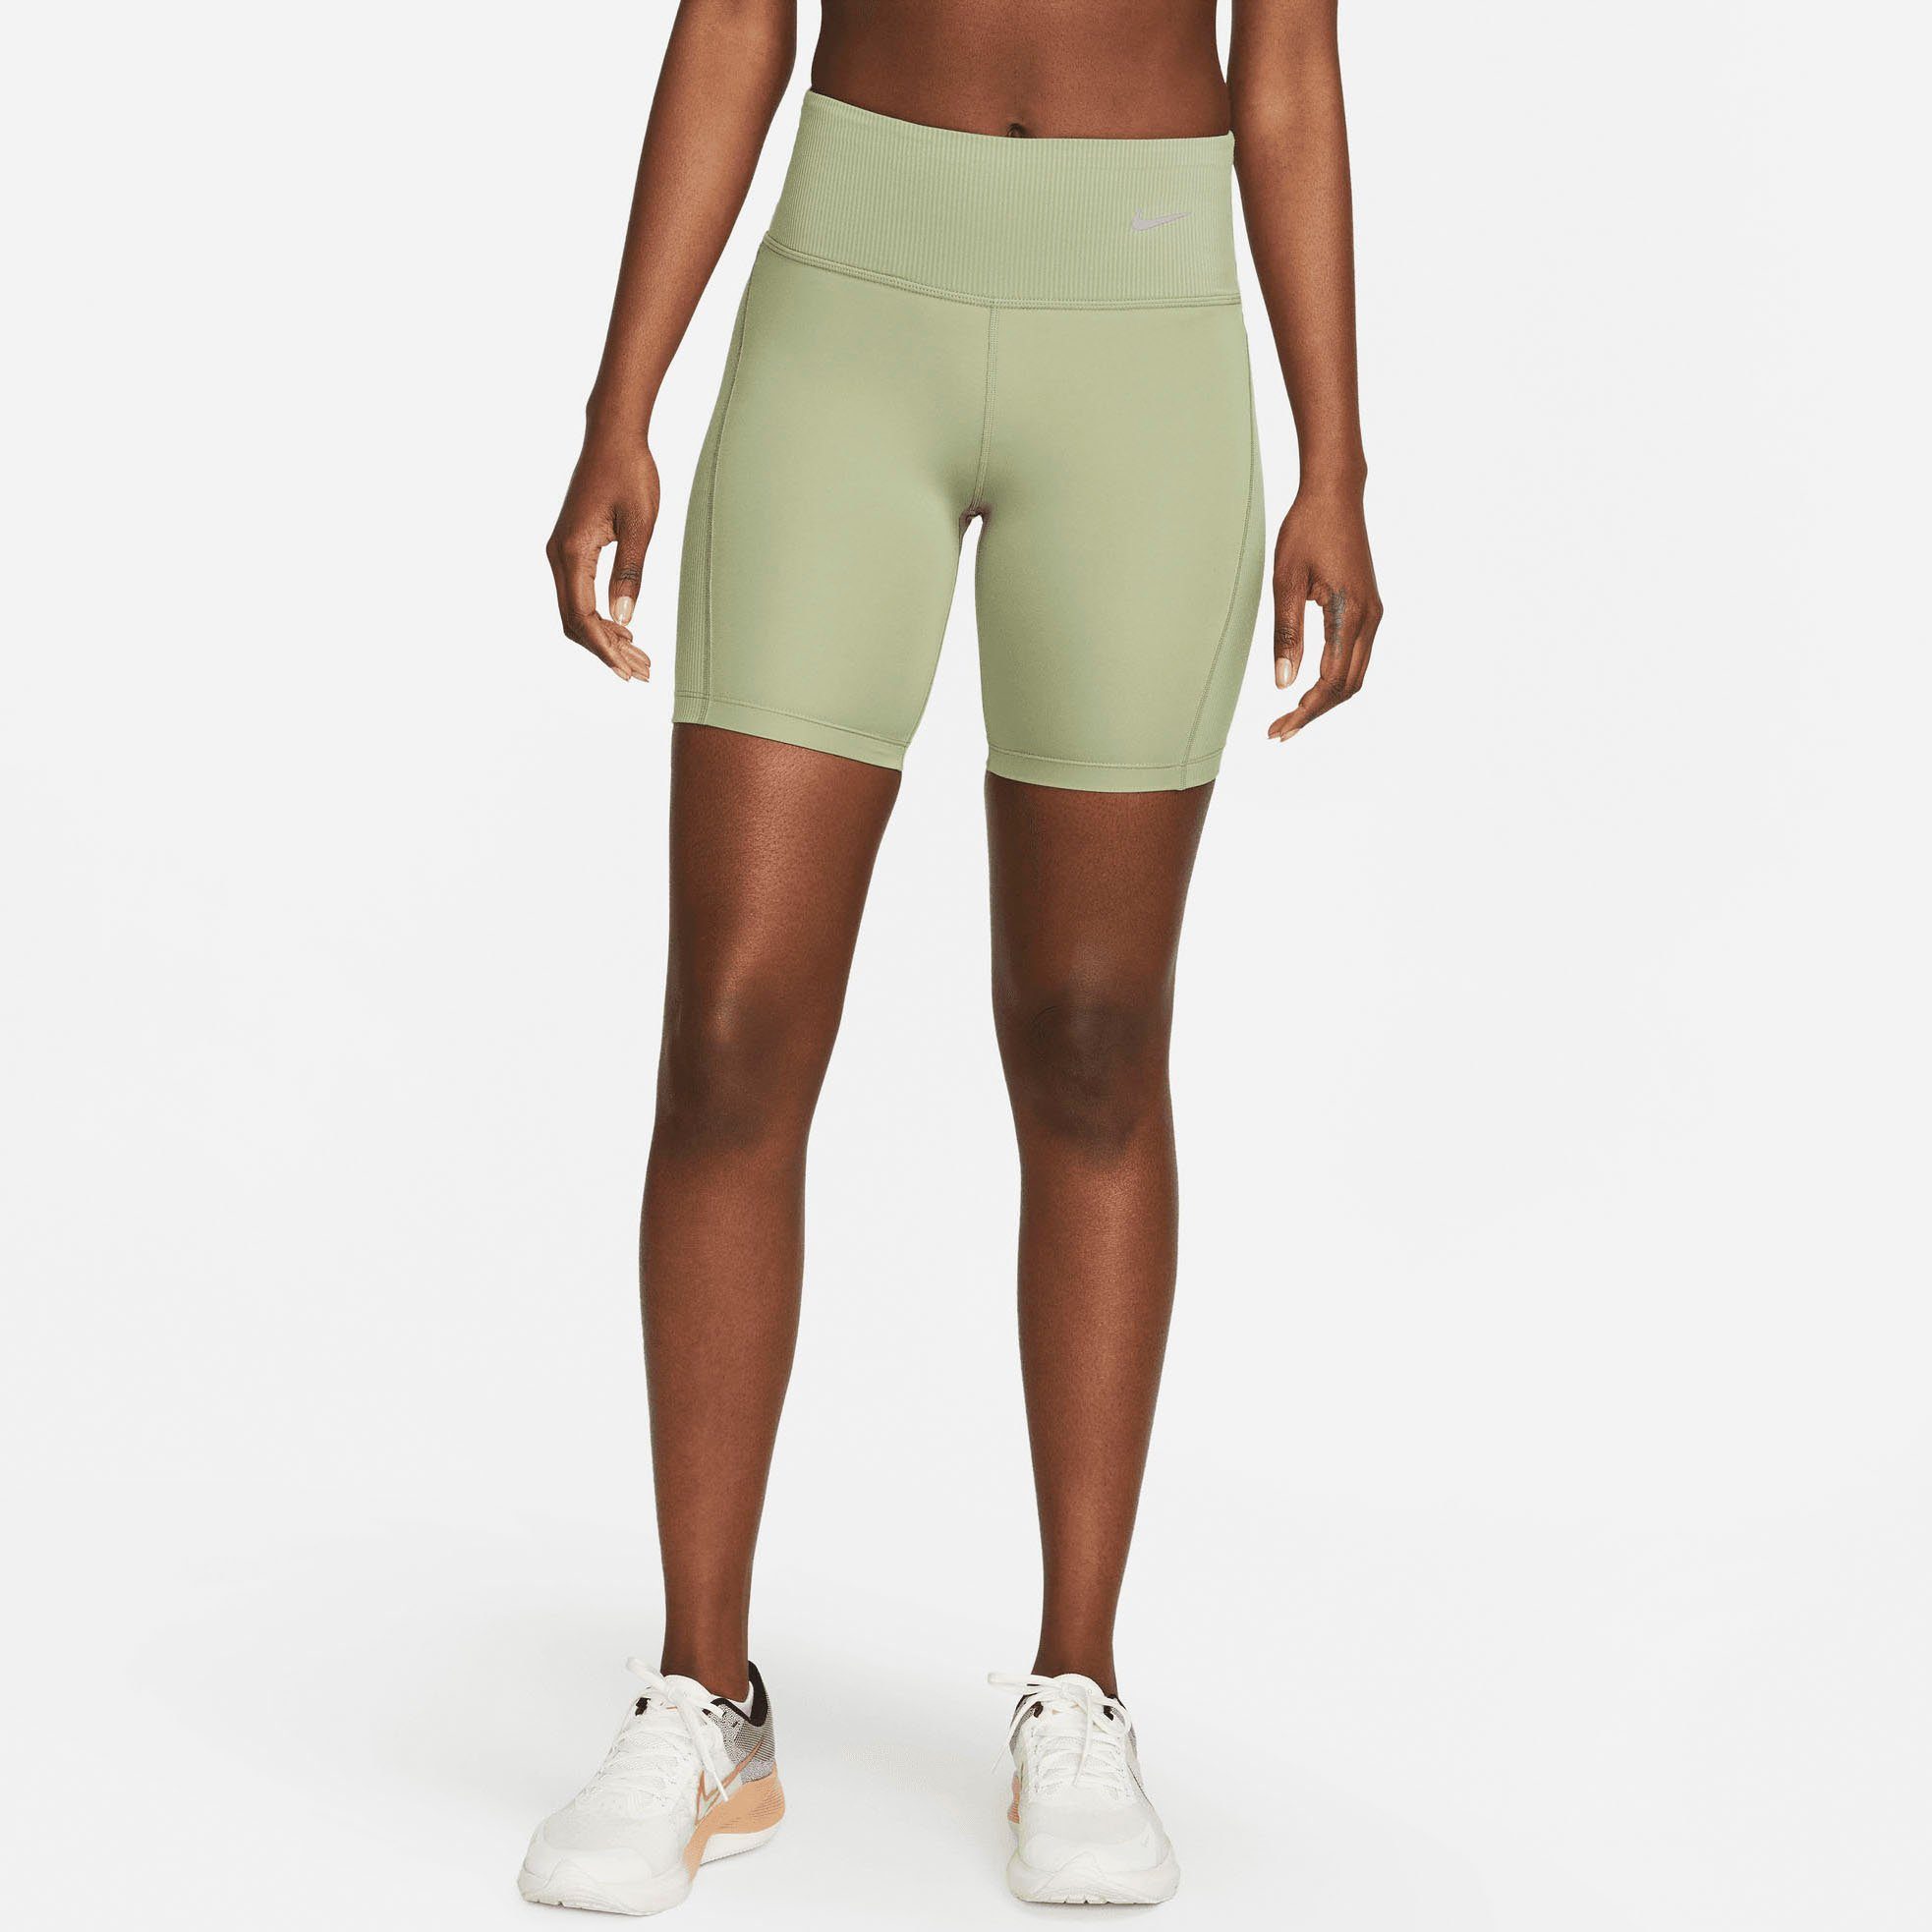 Nike grün Shorts Lauftights Women's Dri-FIT